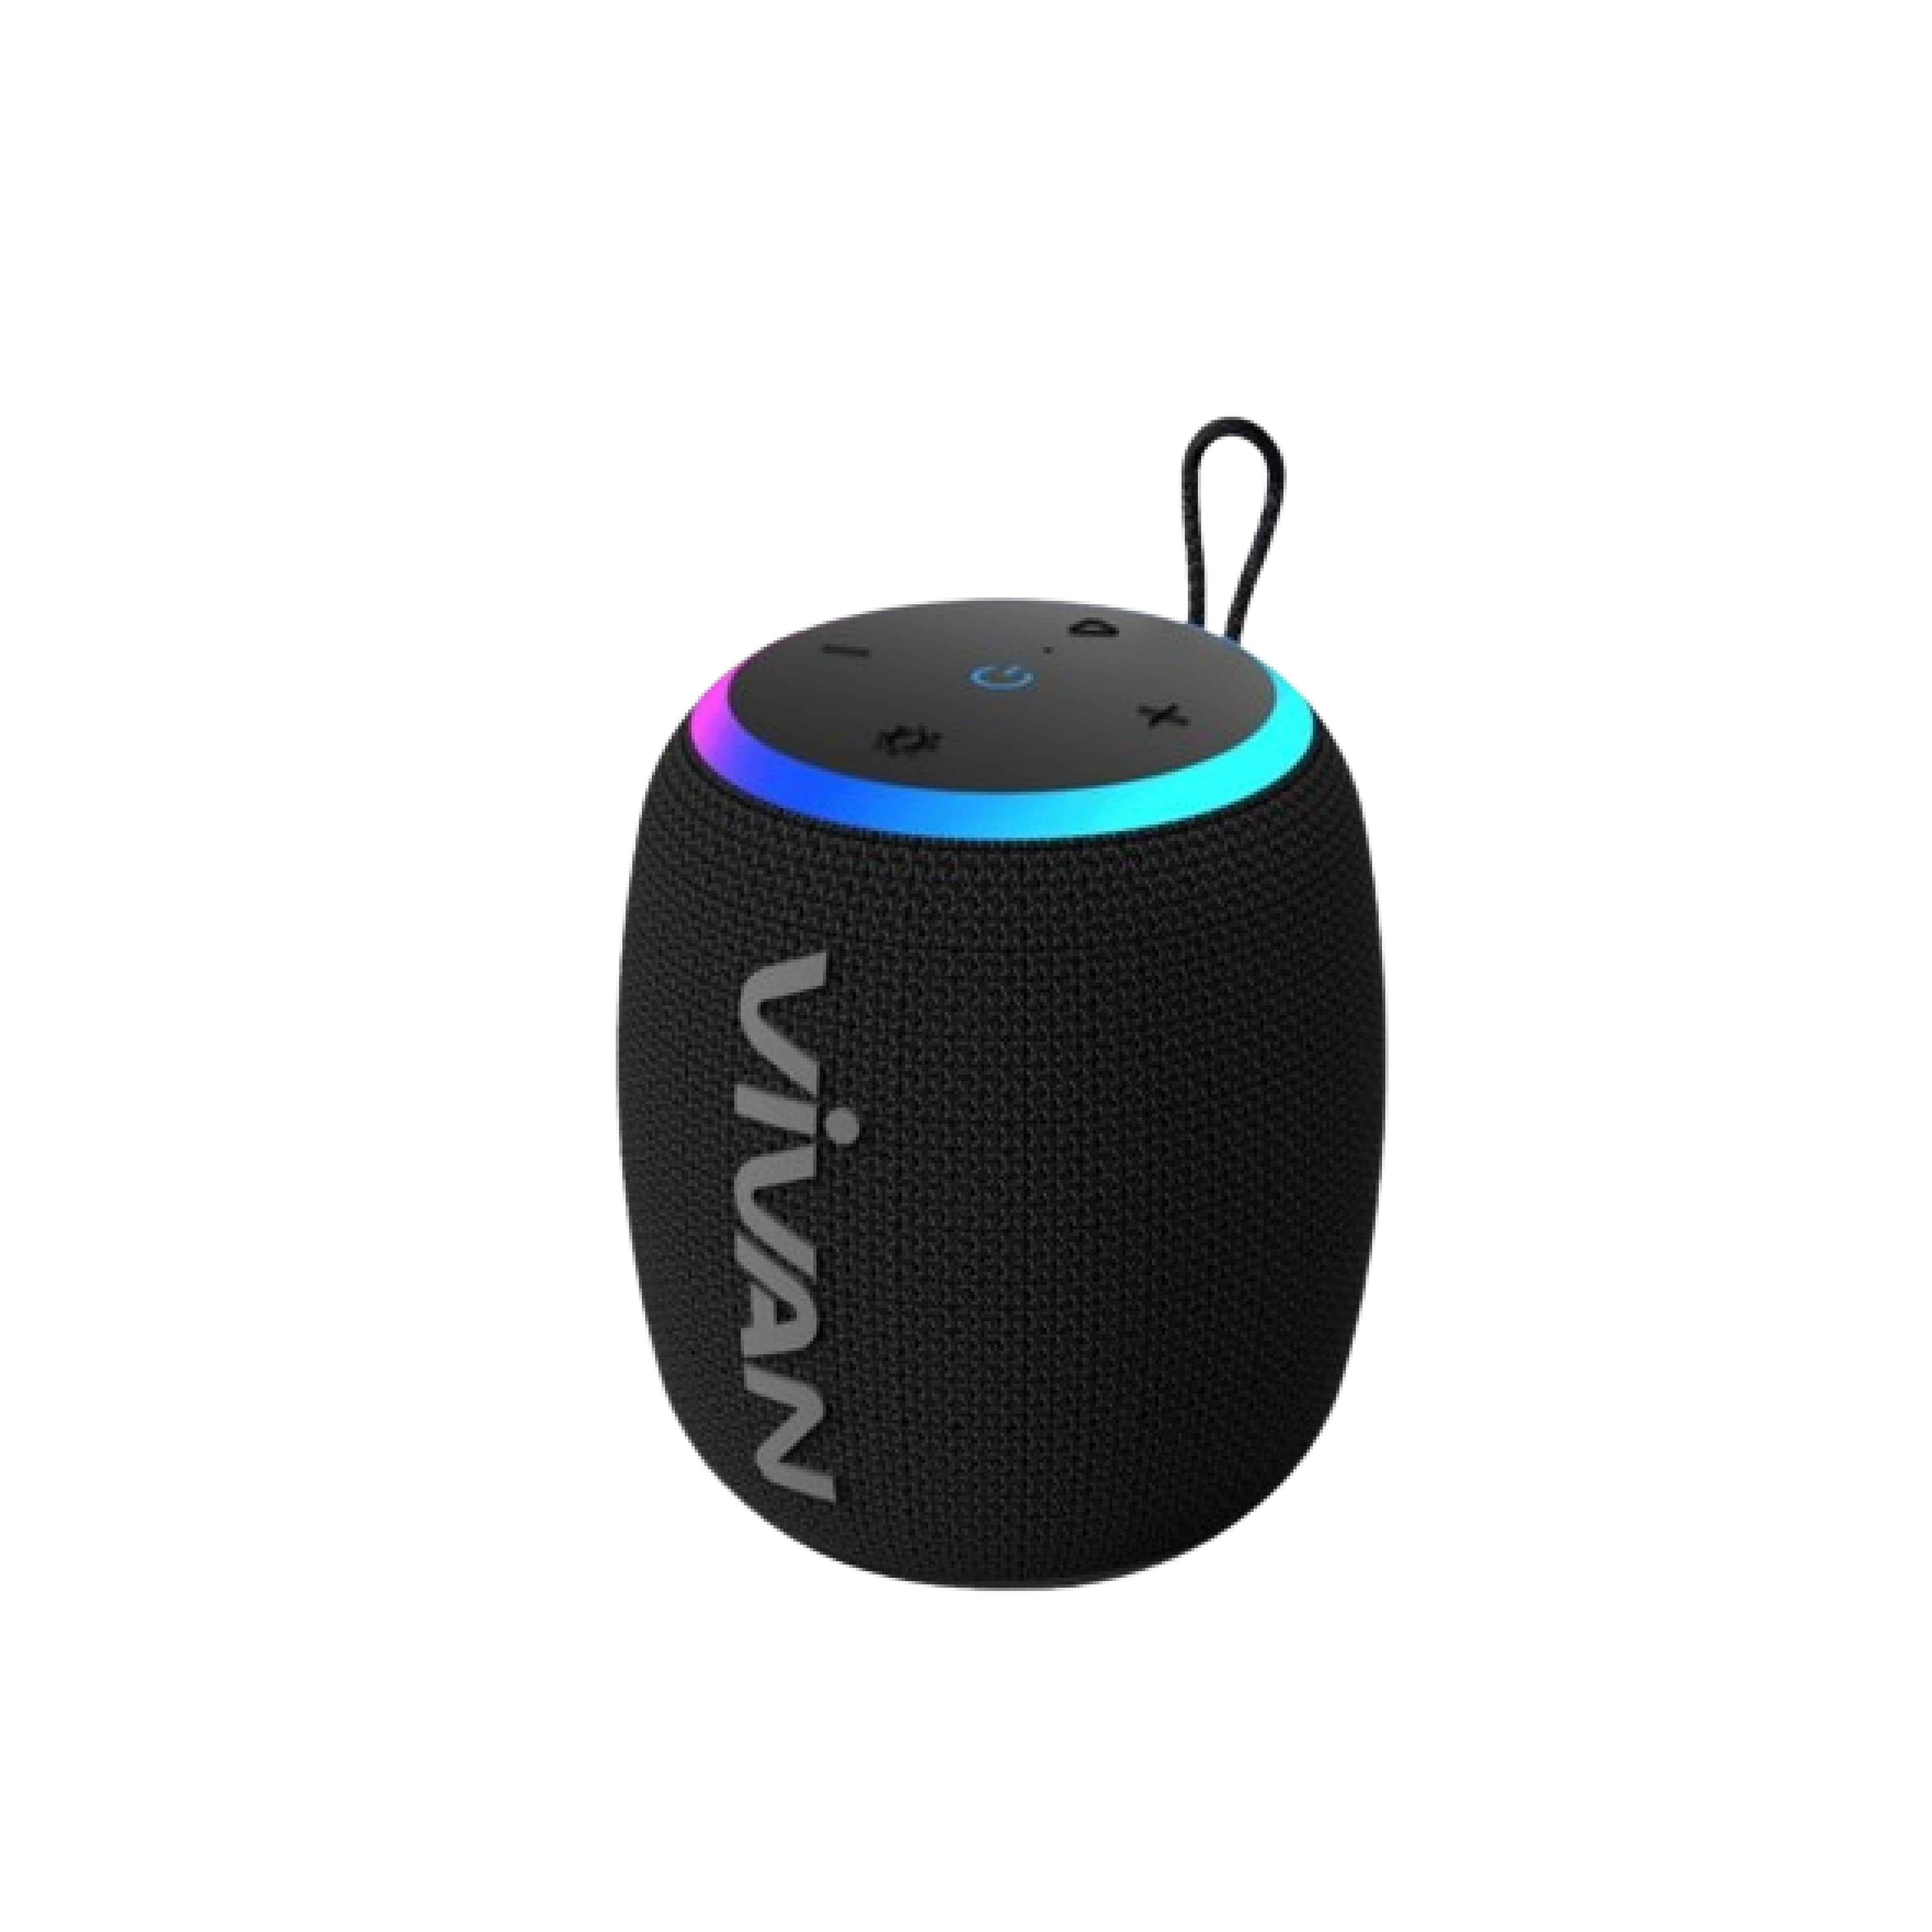 VIVAN VS15 Black 10W IPX7 waterproof Bluetooth speaker